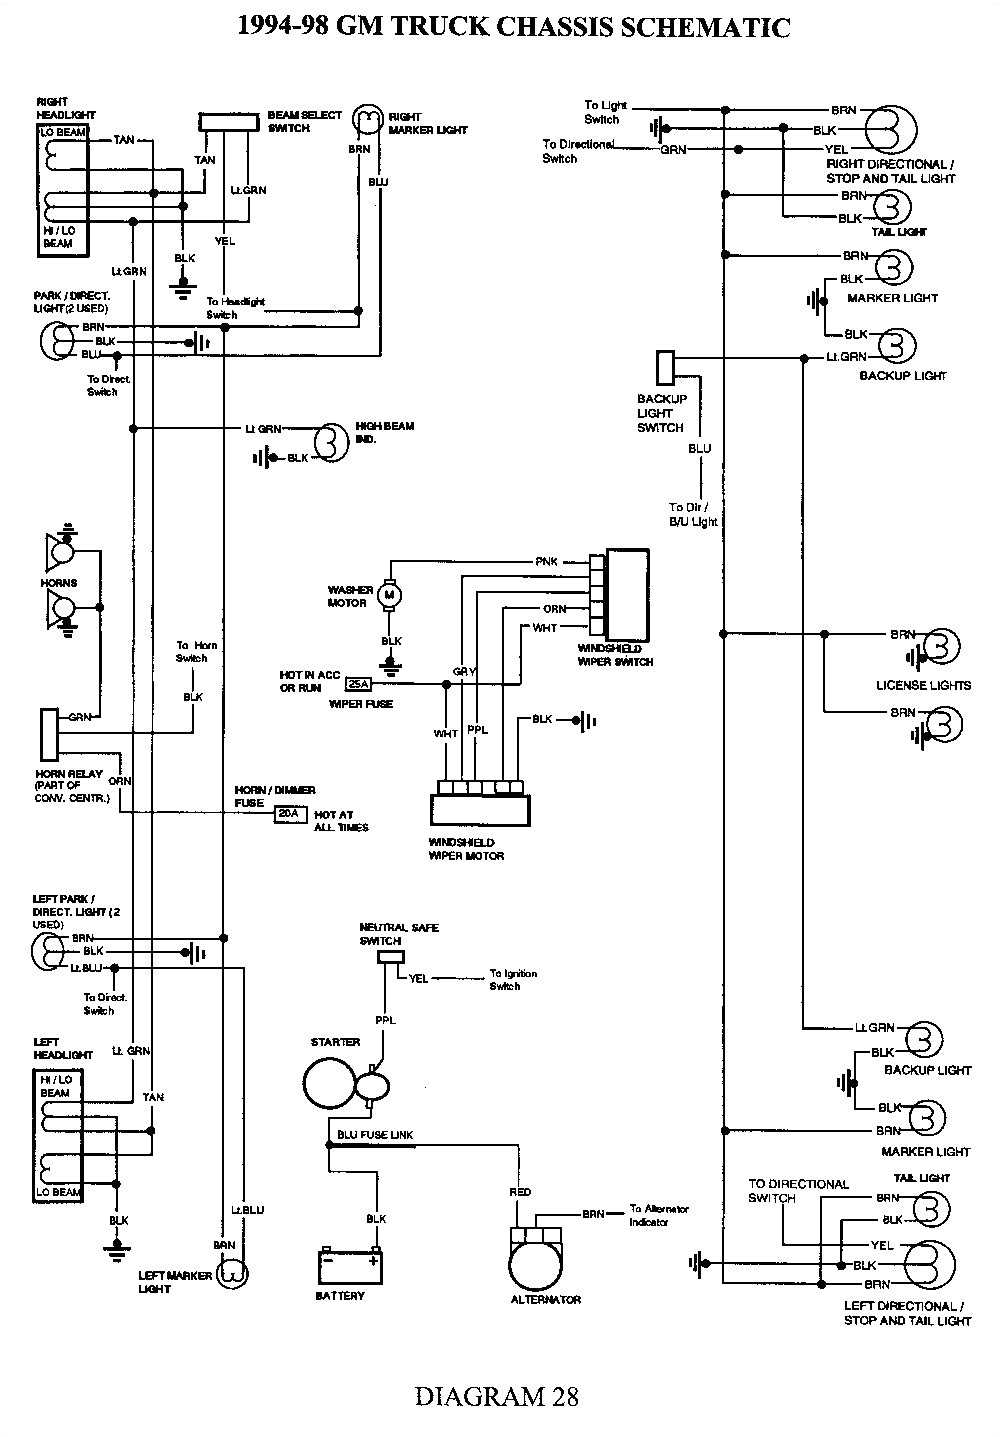 04 chevy 2500hd wiring diagram blower motor schema wiring diagram blower wiring diagram 04 chevy 2500